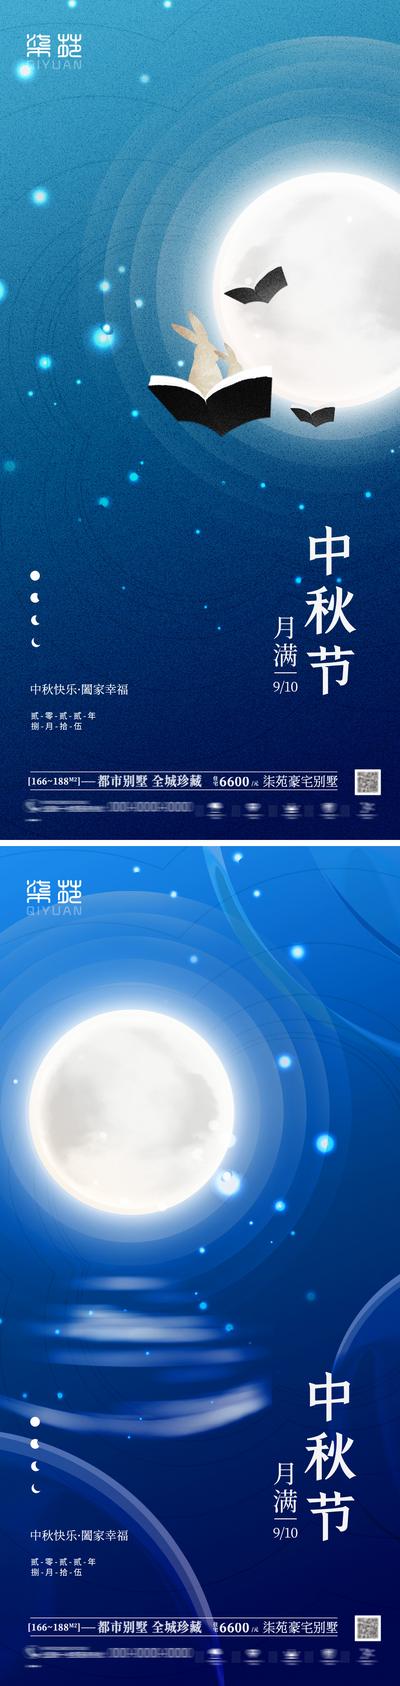 南门网 广告 海报 节日 中秋 教师节 系列 创意